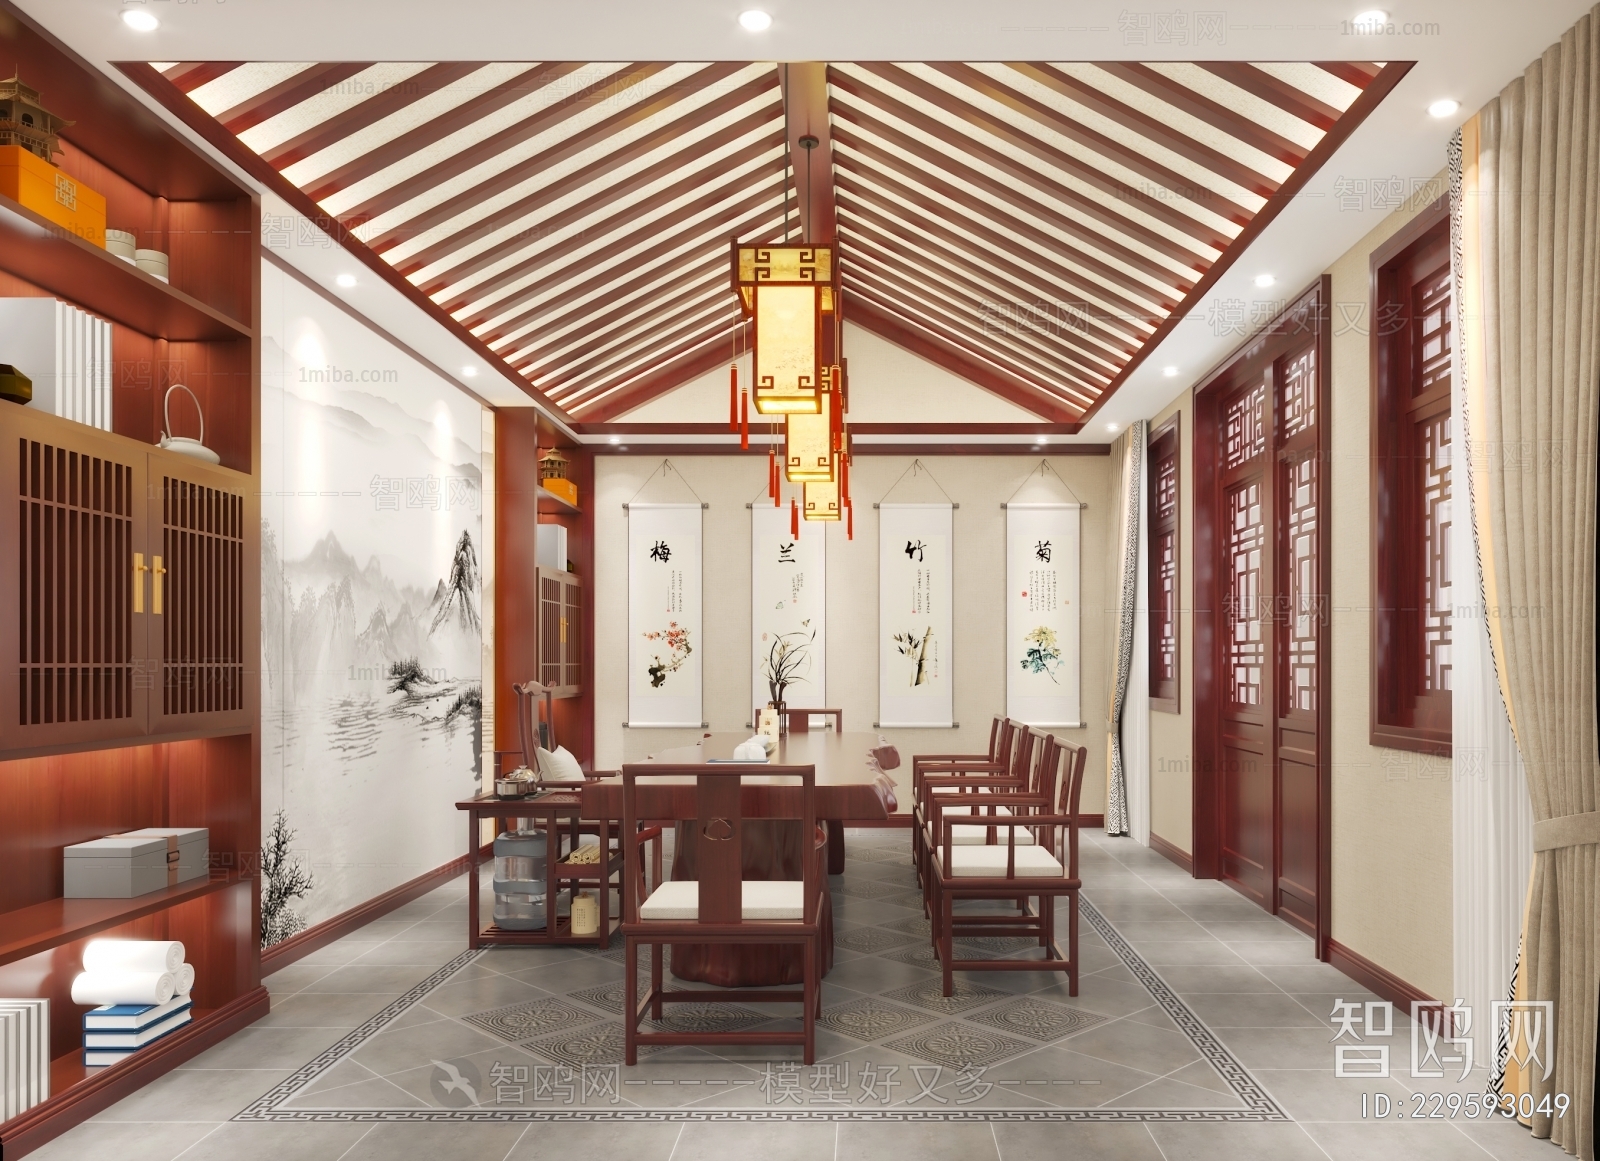 多场景-中式中堂会客厅+茶室+餐厅